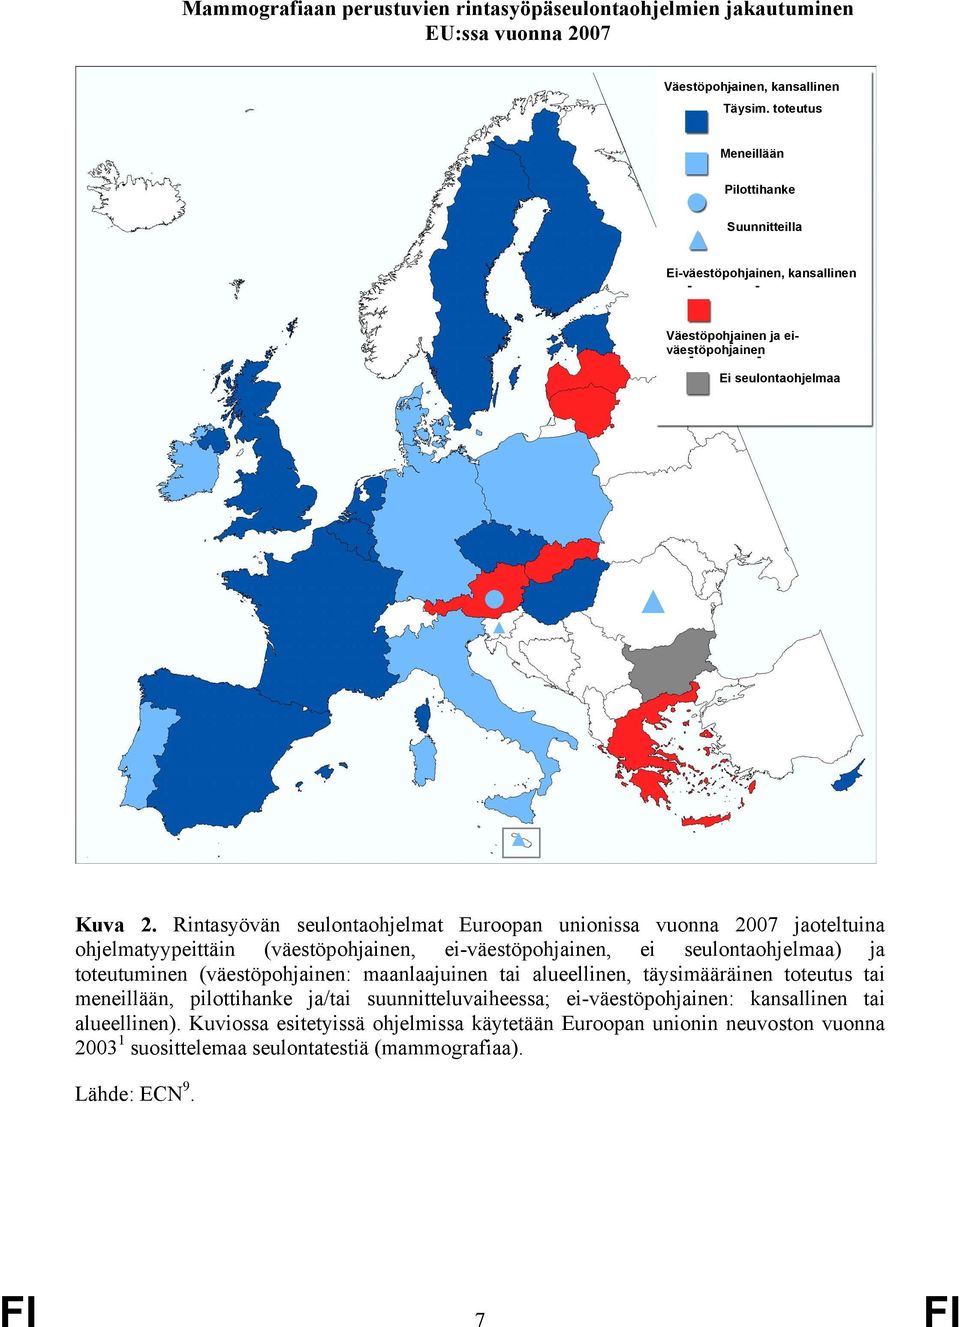 Rintasyövän seulontaohjelmat Euroopan unionissa vuonna 2007 jaoteltuina ohjelmatyypeittäin (väestöpohjainen, ei-väestöpohjainen, ei seulontaohjelmaa) ja toteutuminen (väestöpohjainen: